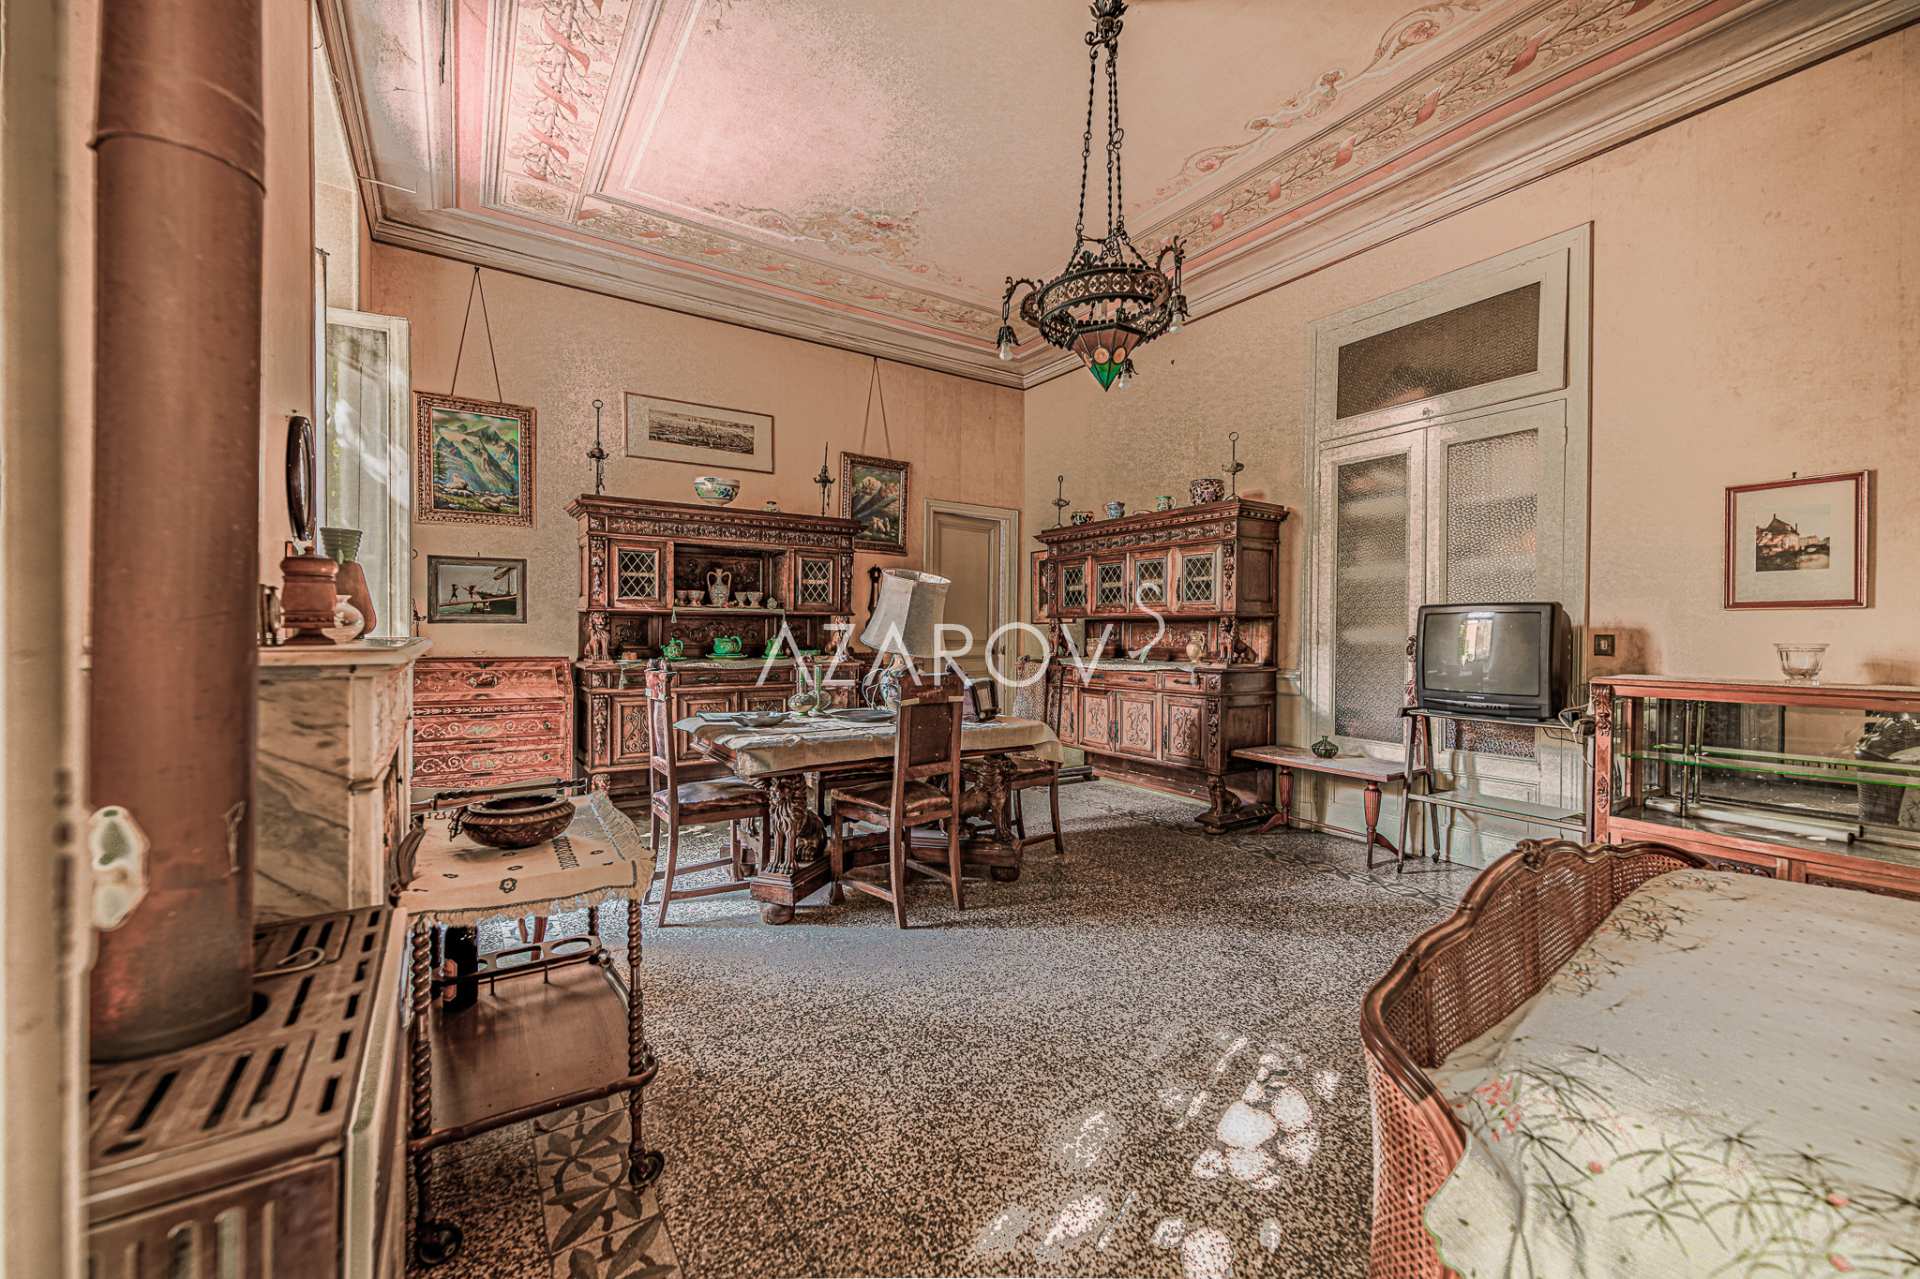 450 kvm villa i Ventimiglia under restaurering